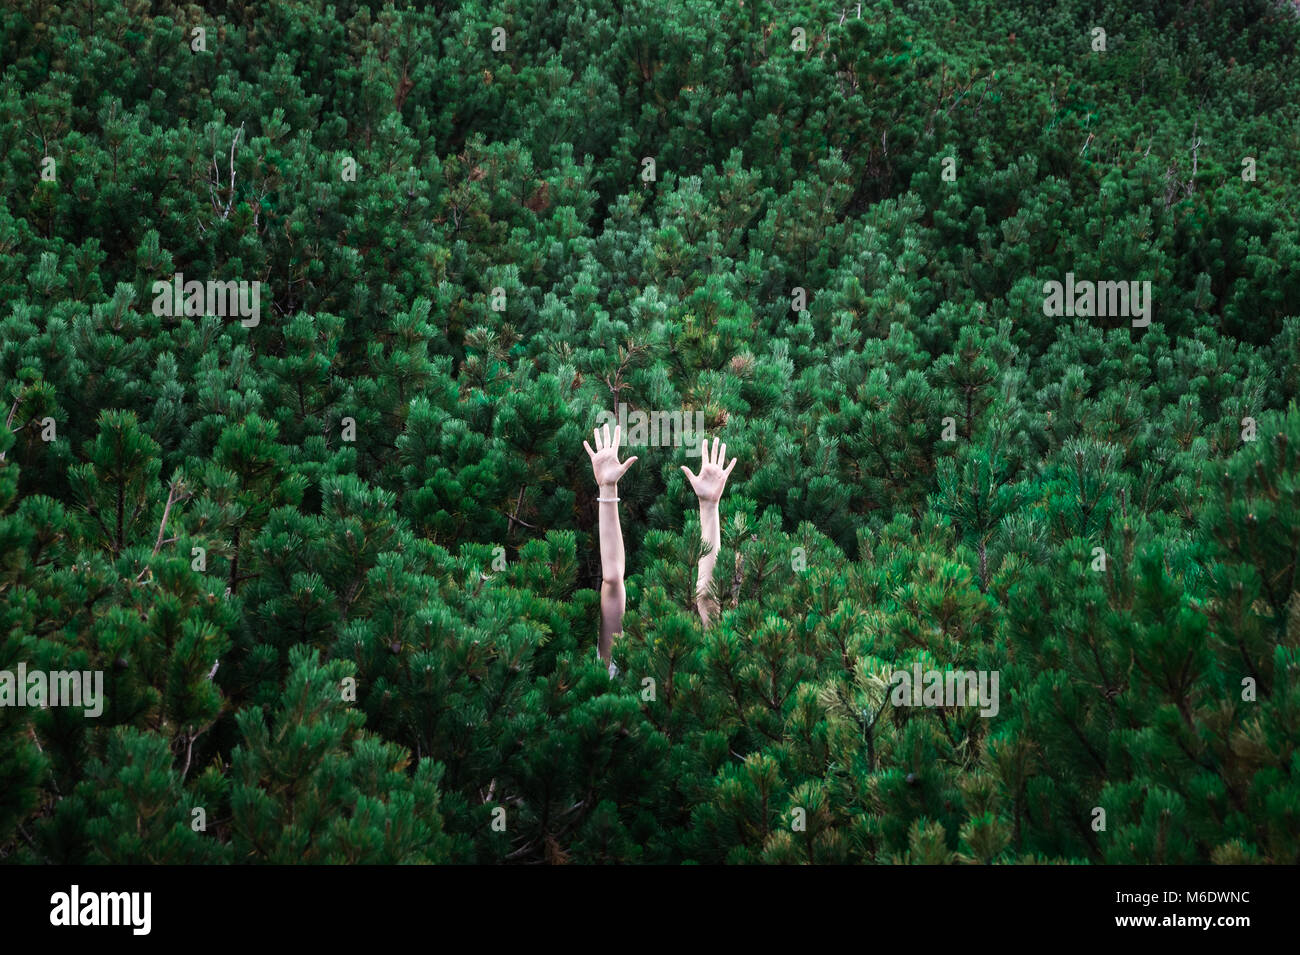 Imagen abstracta de personas levantaron la mano visible entre ricos verdes árboles de pieles que componen el fondo completo Foto de stock